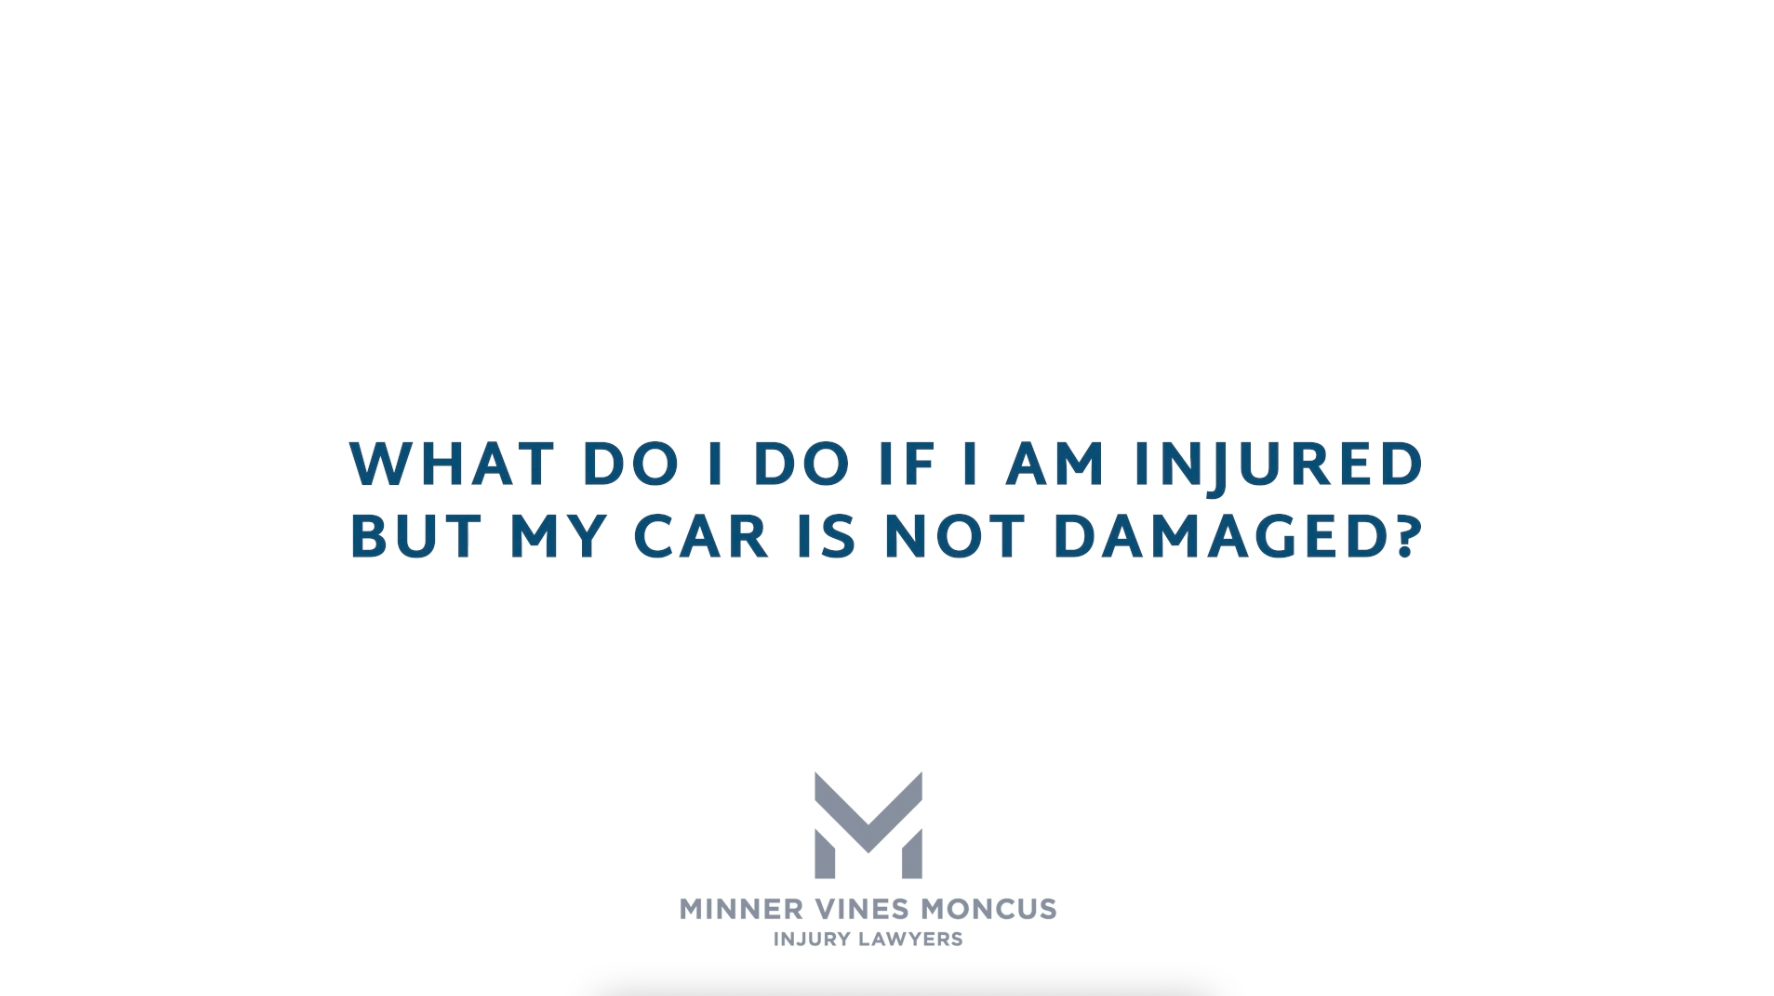 What do I do if I am injured but my car is not damaged?